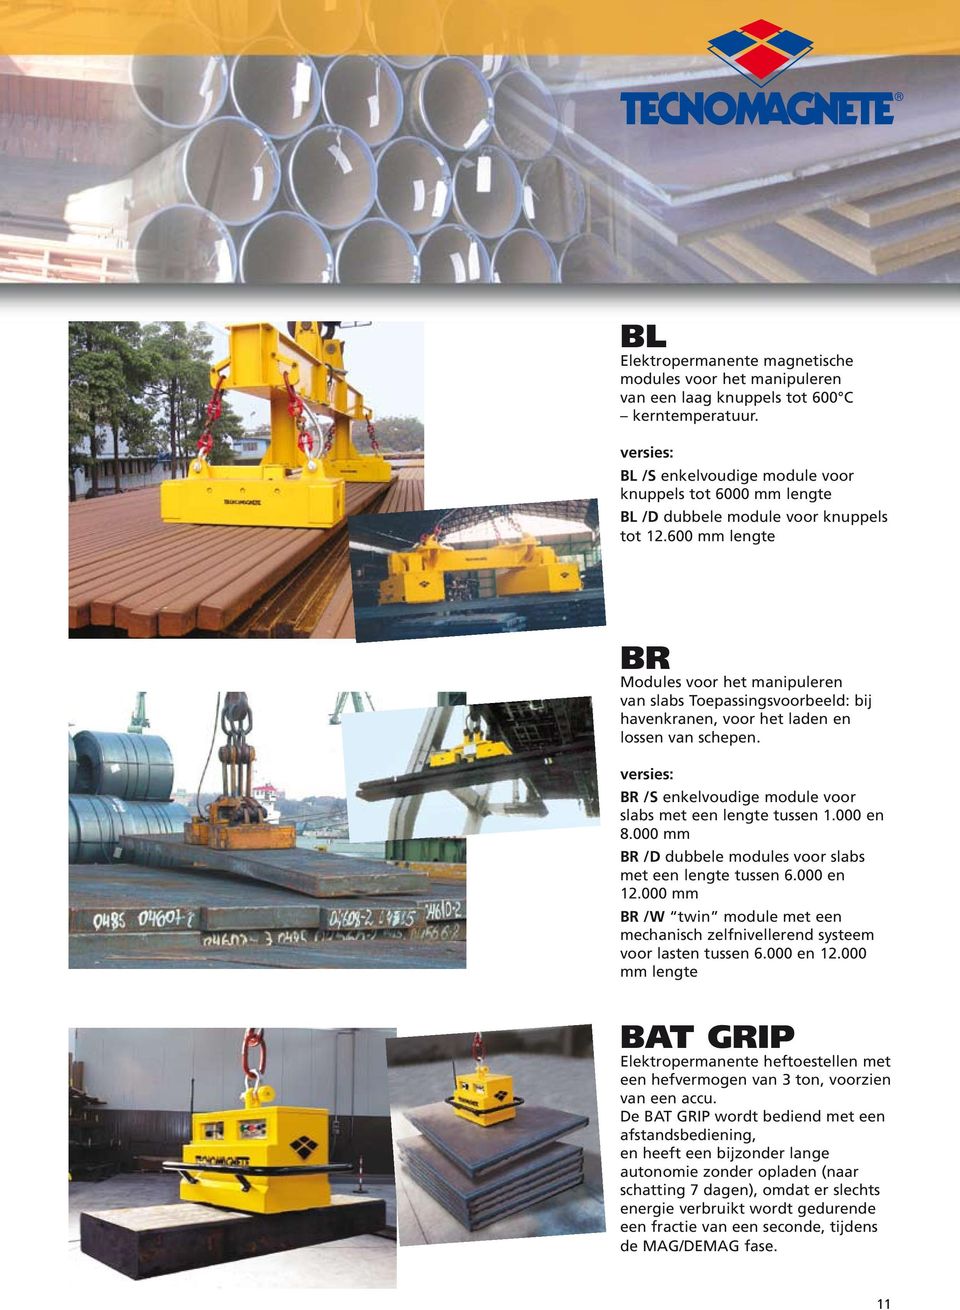 600 mm lengte BR Modules voor het manipuleren van slabs Toepassingsvoorbeeld: bij havenkranen, voor het laden en lossen van schepen.